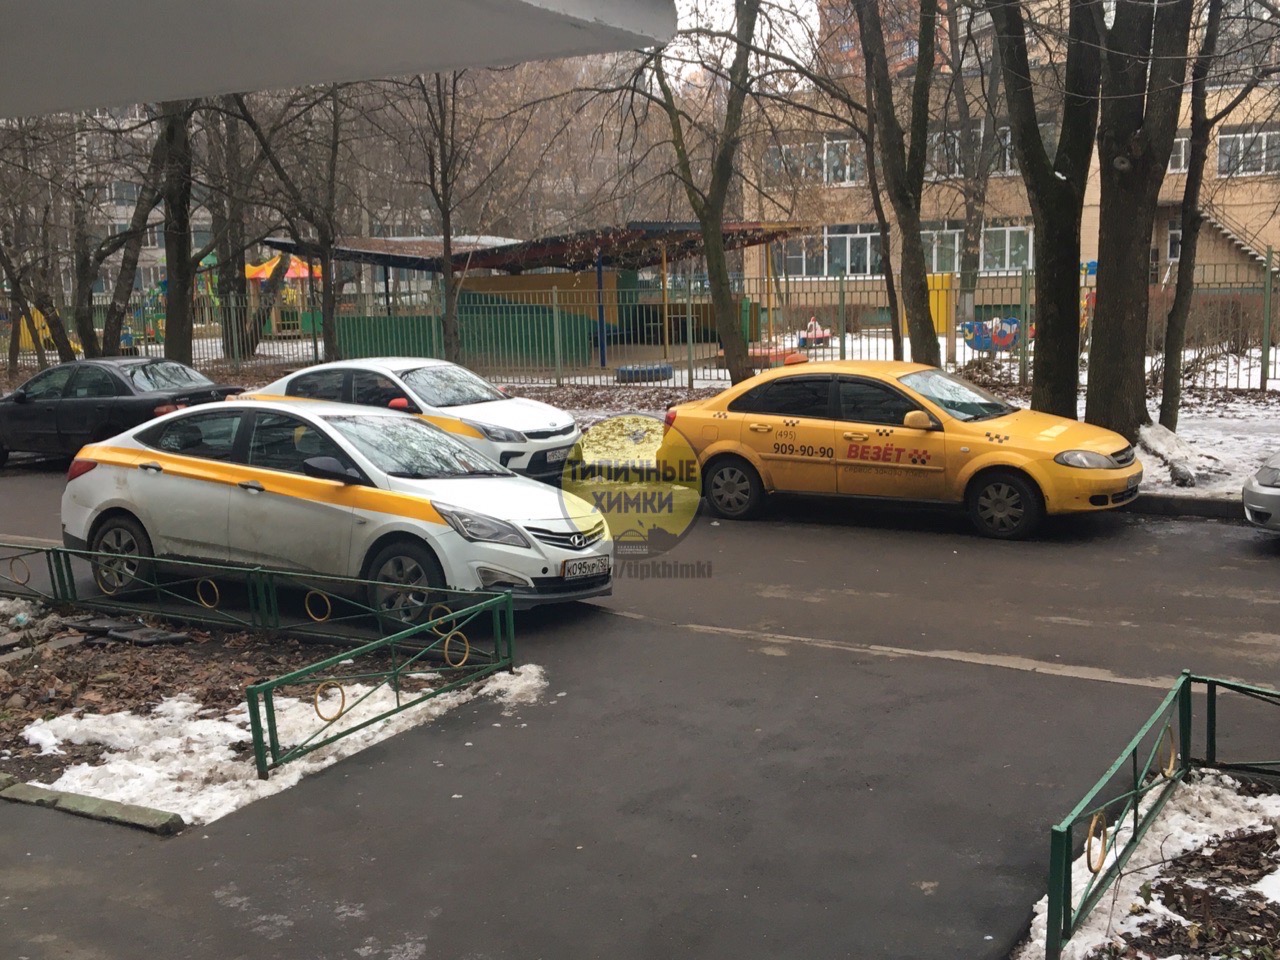 Г. Химки, ул.Молодежная, д.14/30
Тот момент, когда закон о запрете парковки такси и г...